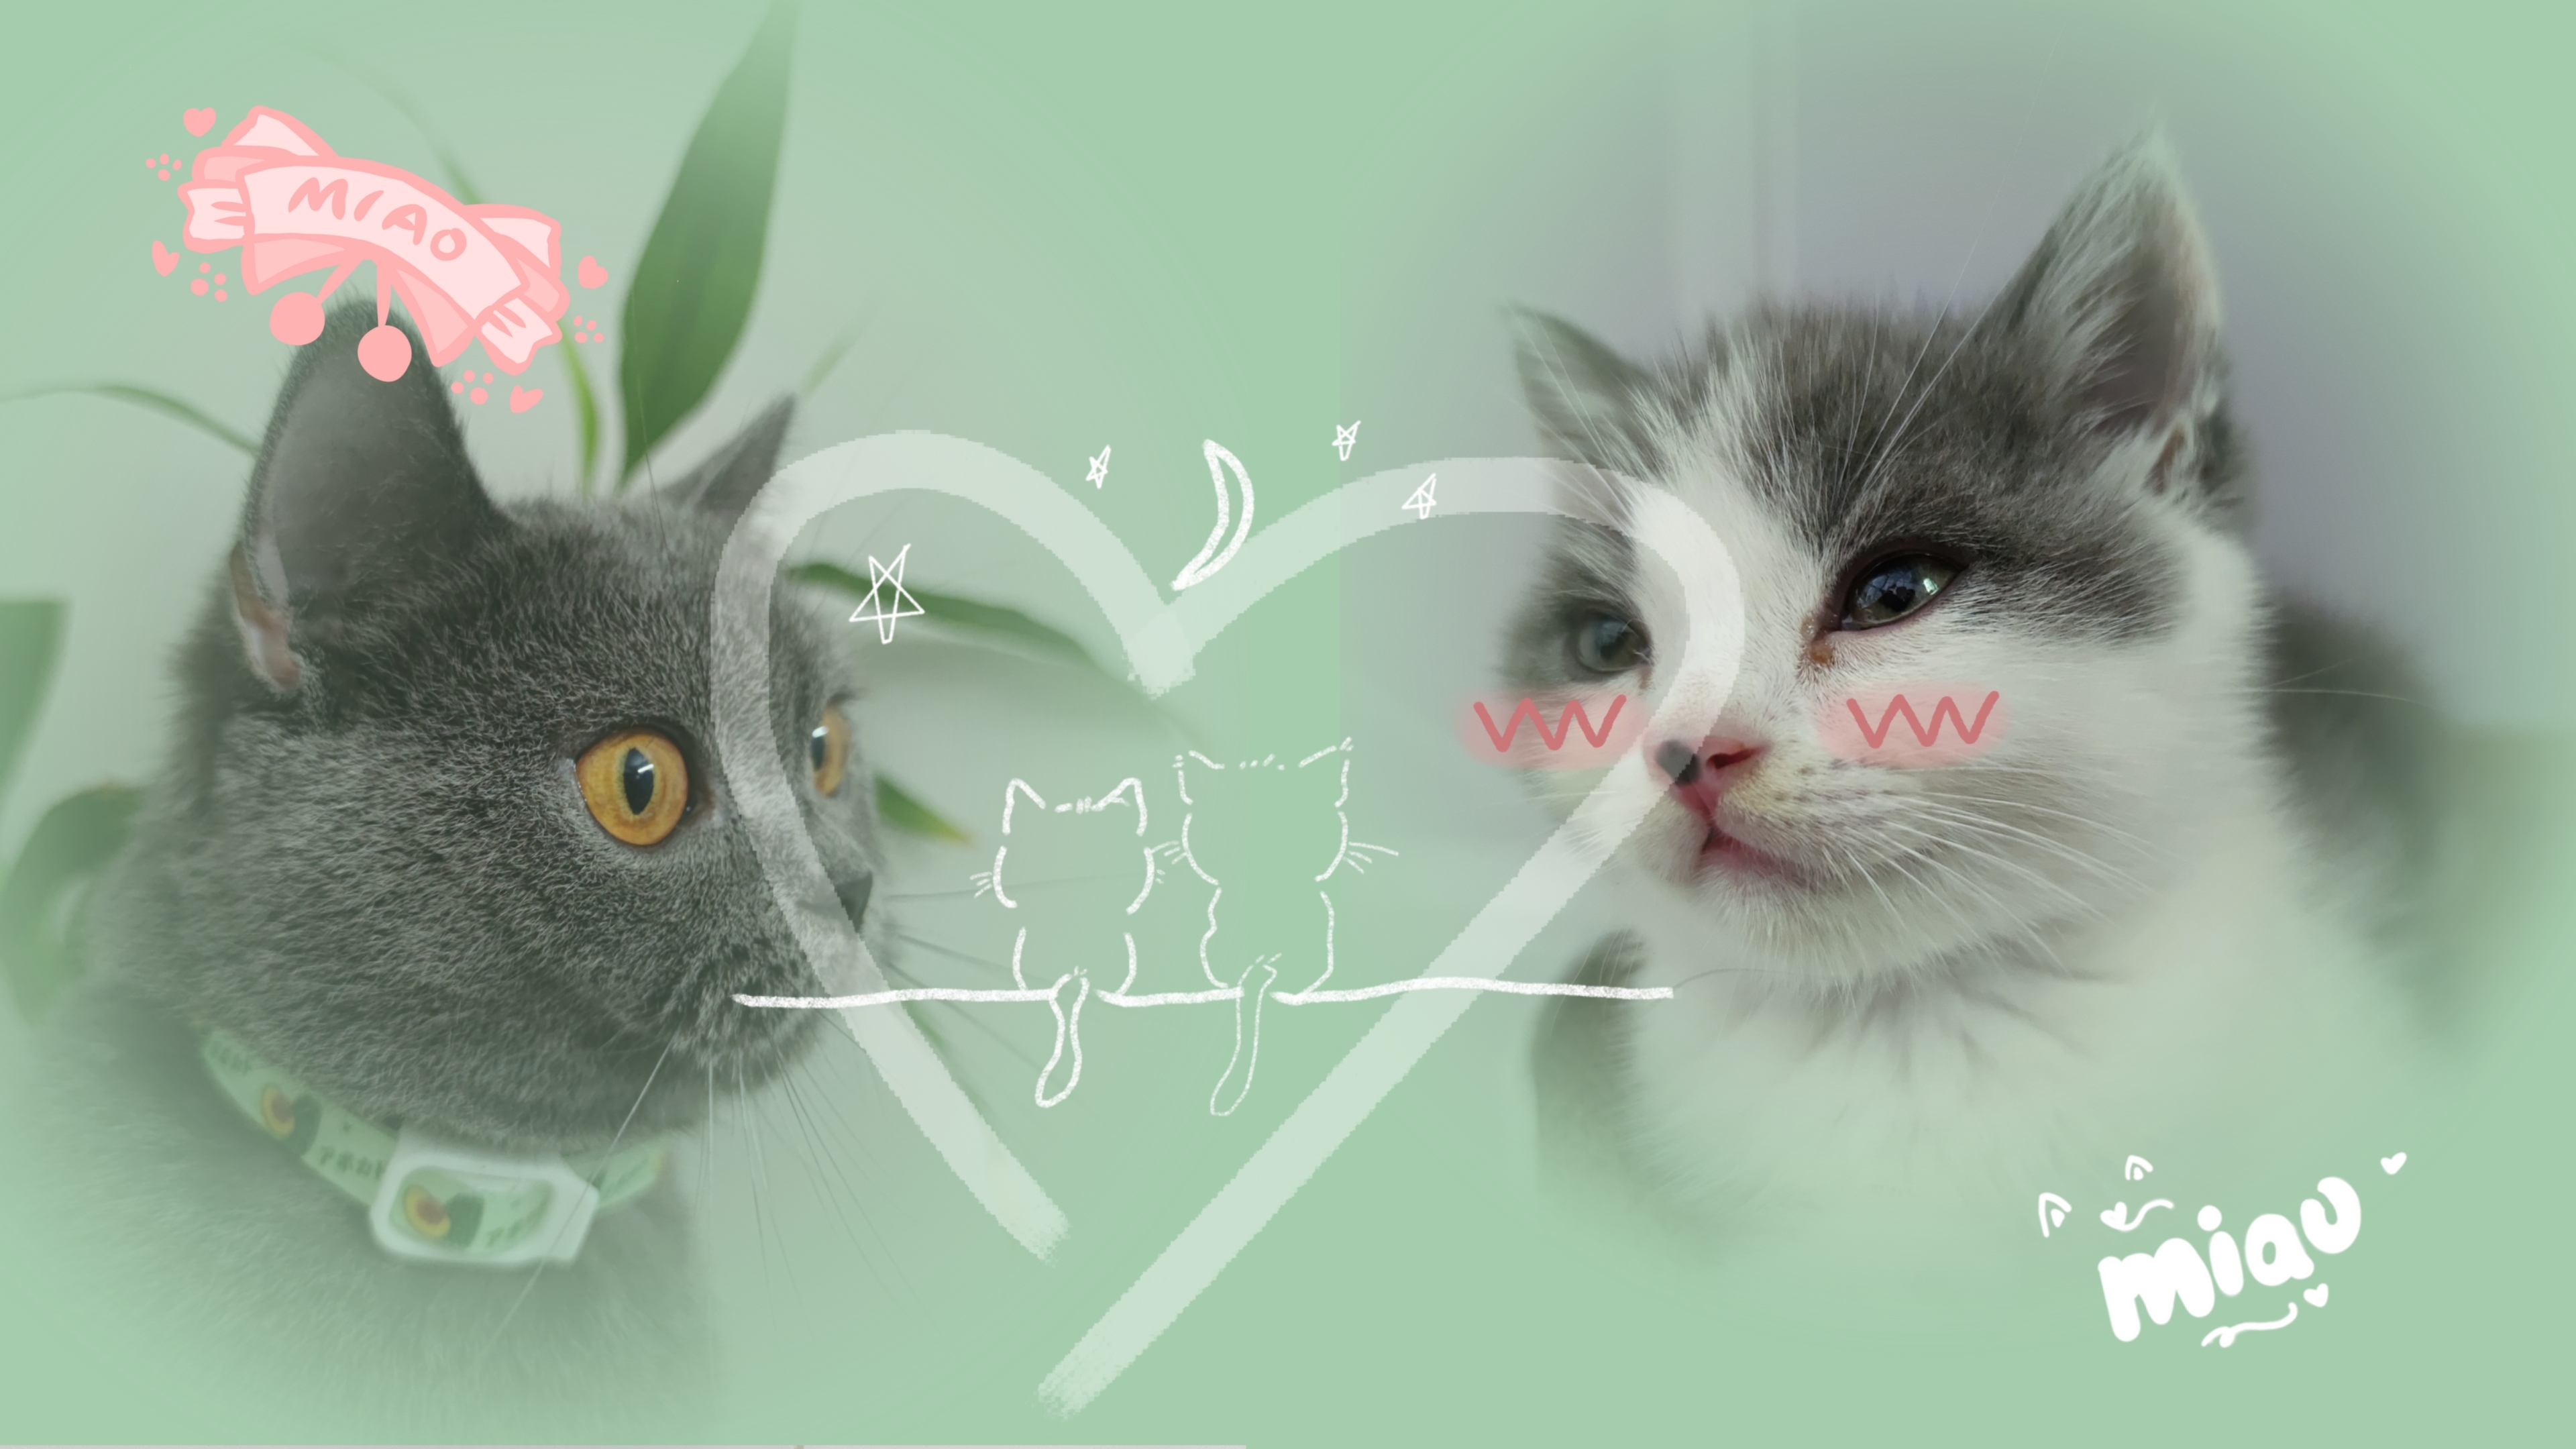 可爱猫猫情侣头像 - 高清图片，堆糖，美图壁纸兴趣社区